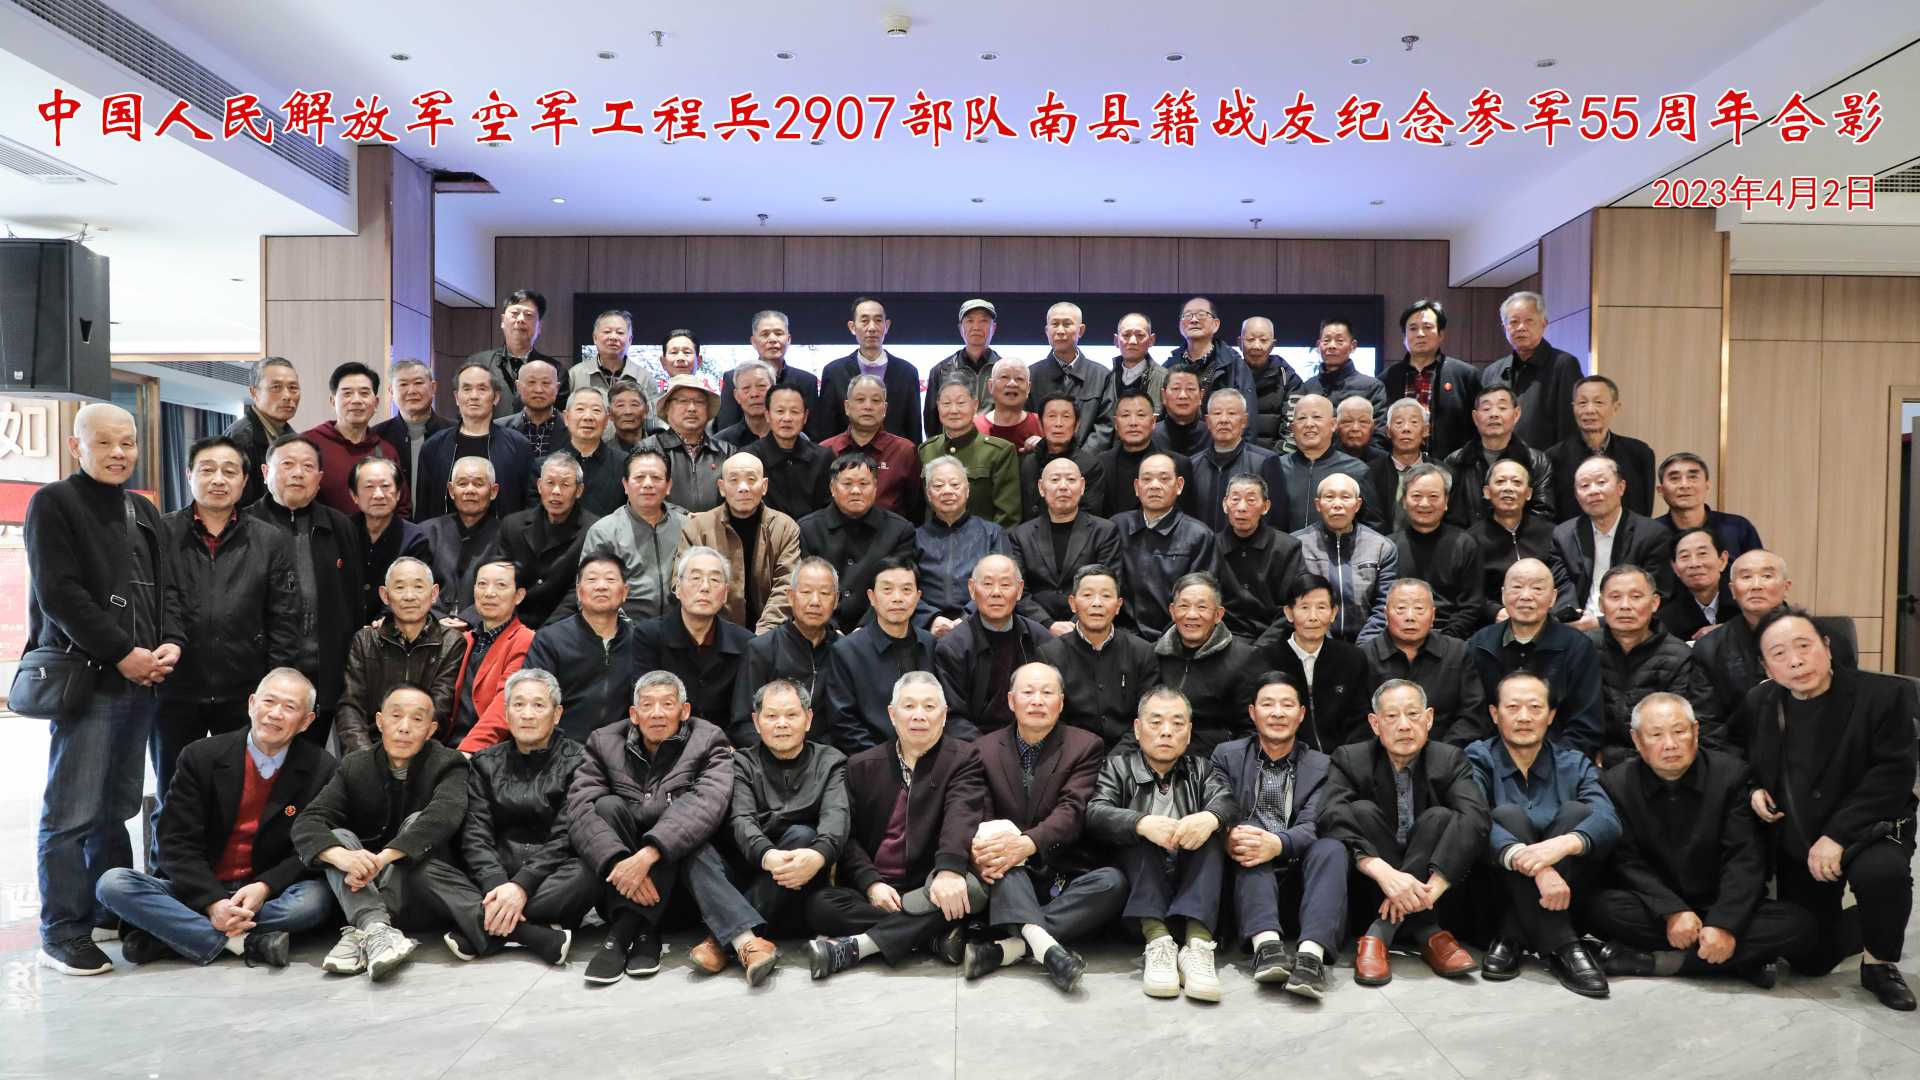 中国人民解放军空军2907部队南县籍战友参军55周年联谊会